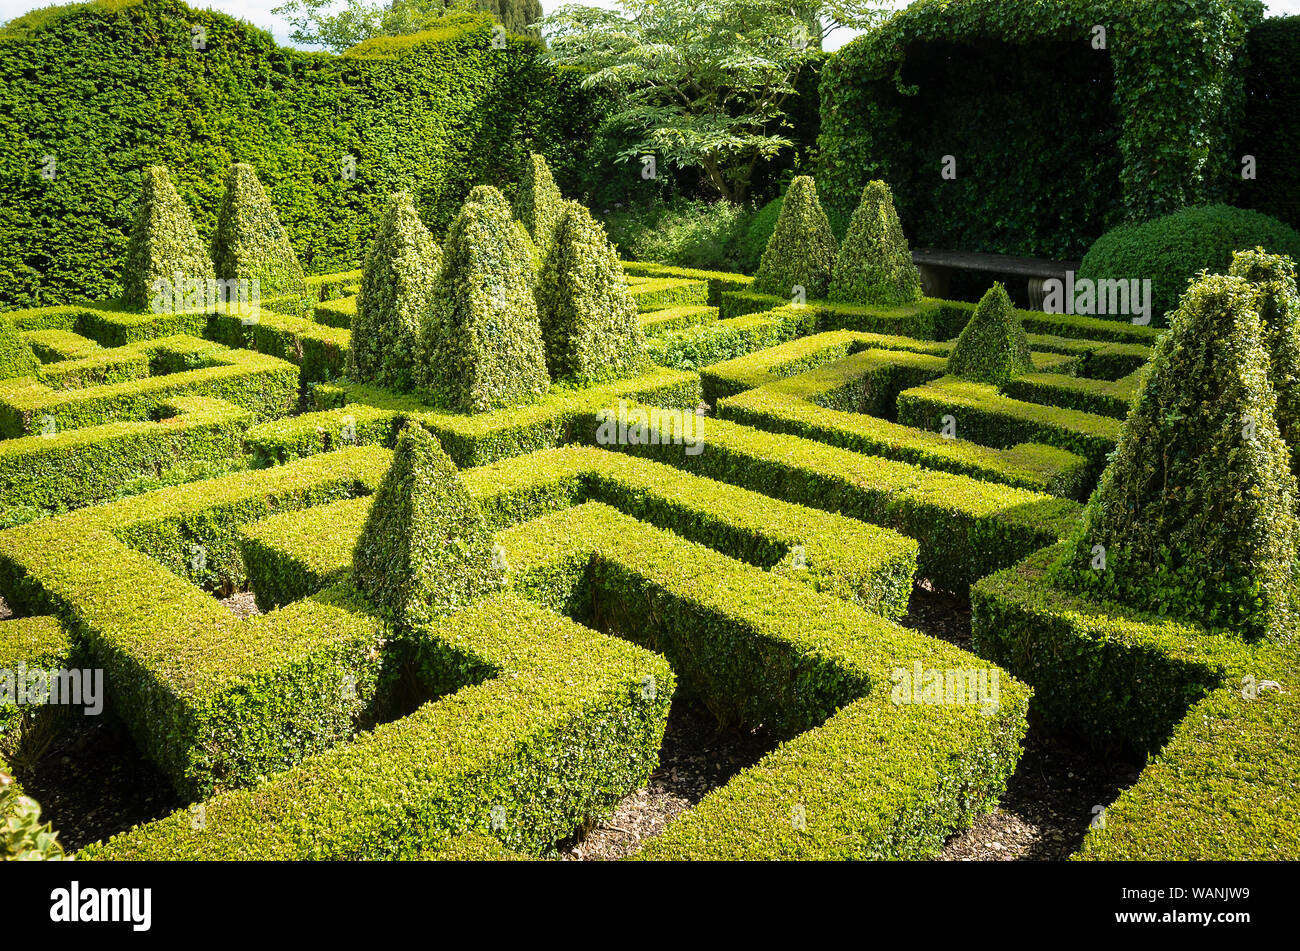 Jardin formel fort labyrinthe de Bourton House dans les Cotswolds en donnant un séjour calme evergreen à ce jardin Anglais UK Banque D'Images